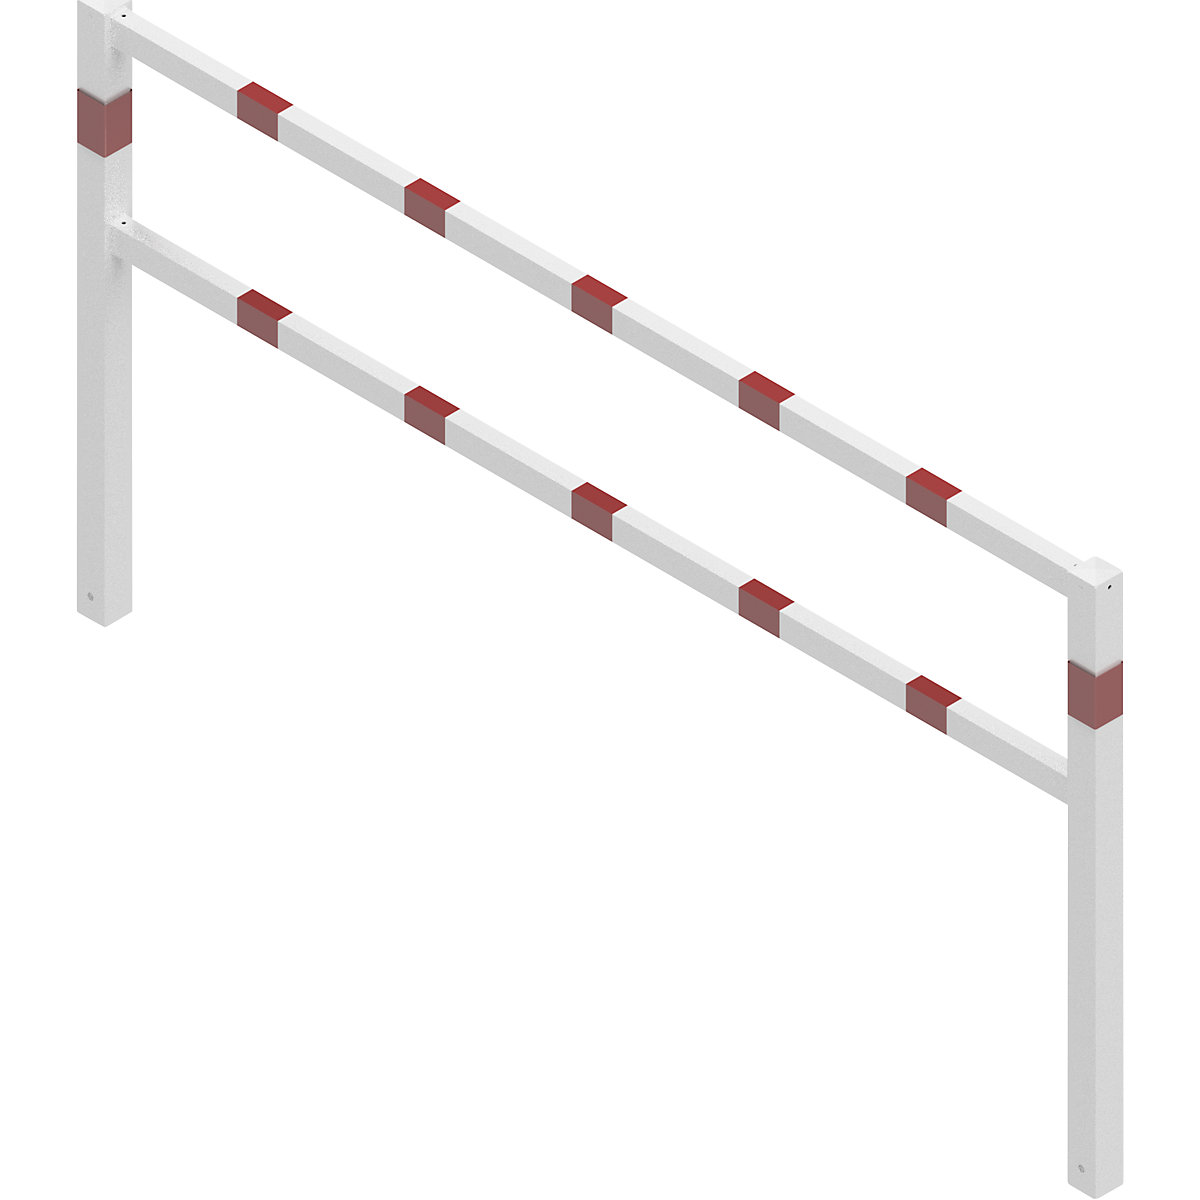 Barrière soudée, avec barre supérieure et au niveau des genoux, blanc avec bandes réfléchissantes rouges, largeur 2500 mm-2